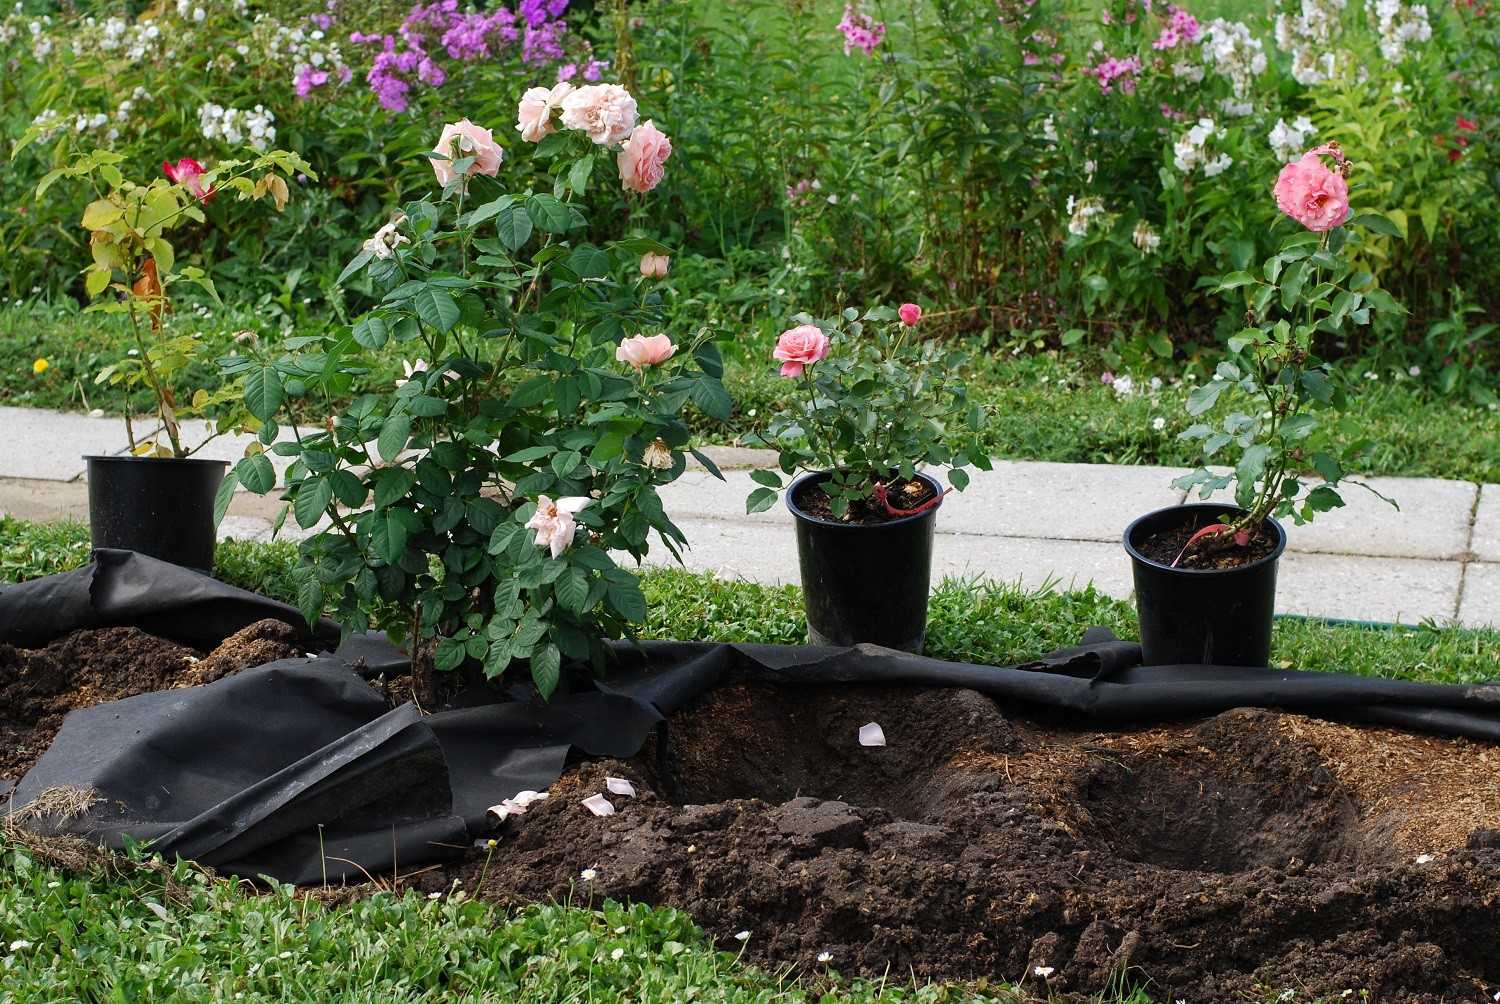 Как правильно сажать розы в открытый грунт: пошаговая инструкция, рекомендации бывалых садоводов